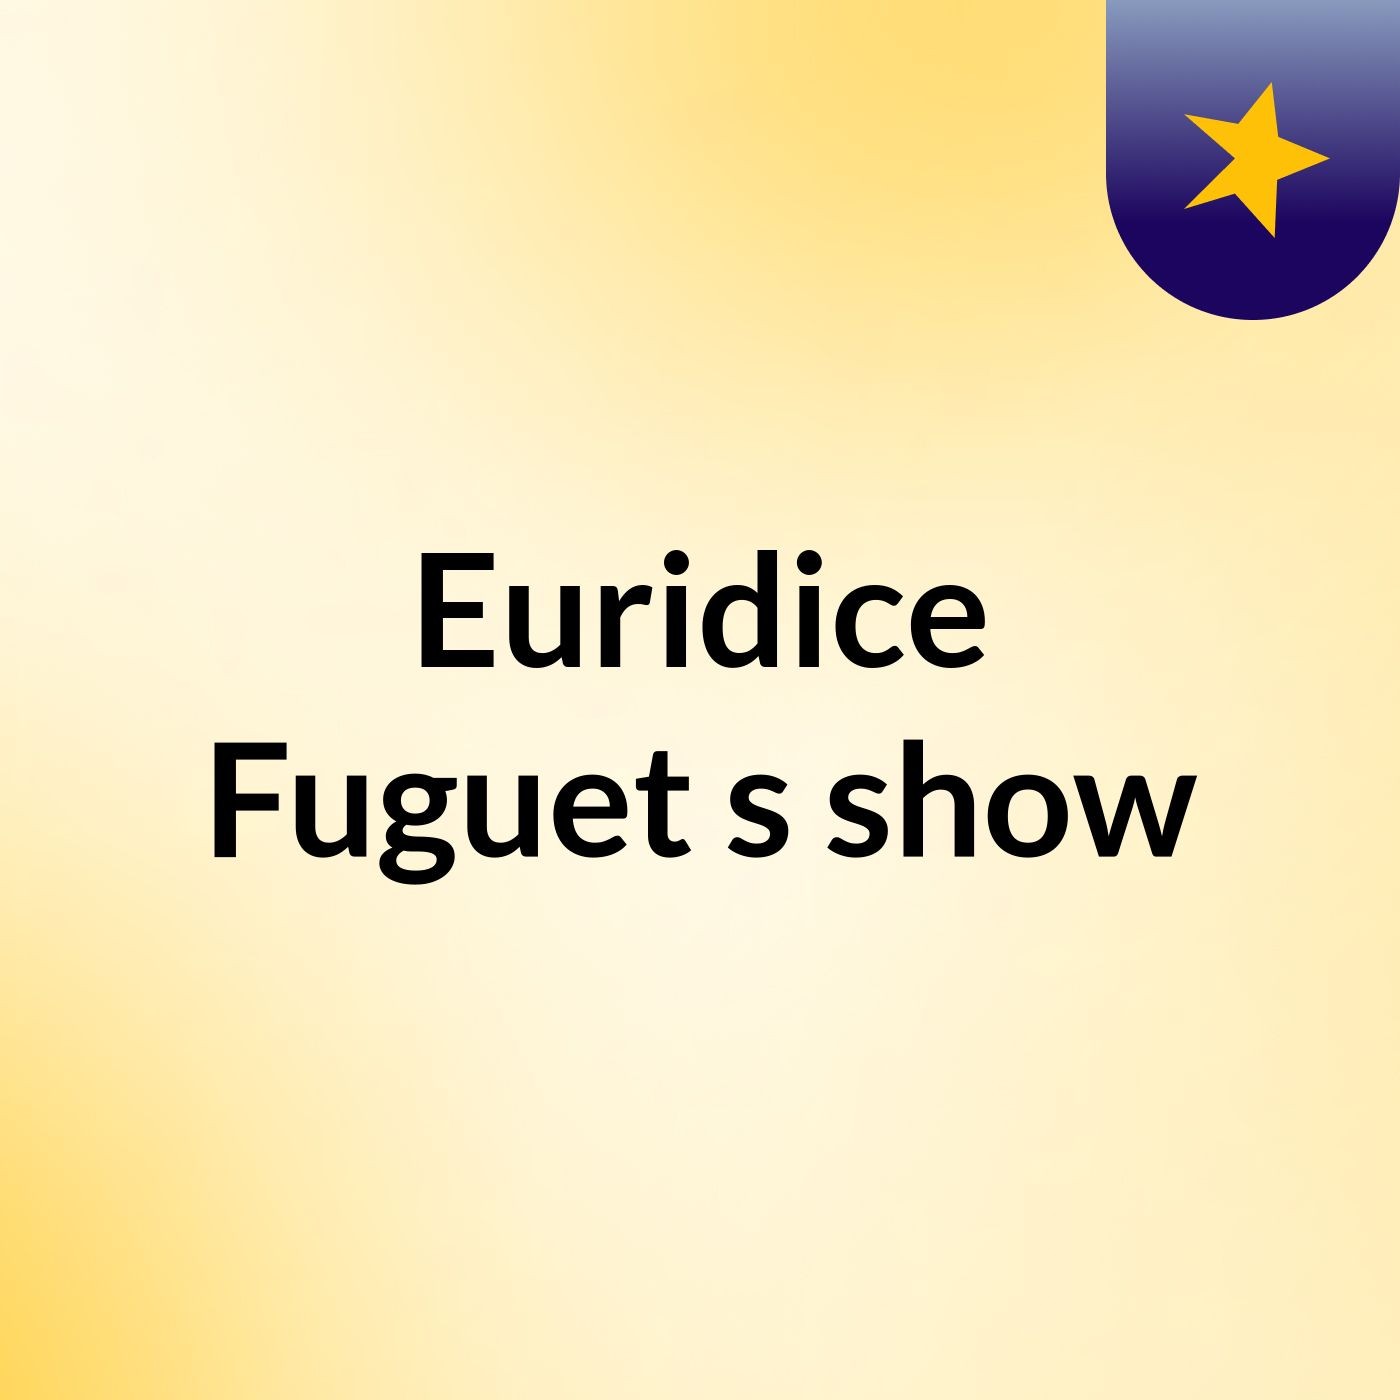 Euridice Fuguet's show